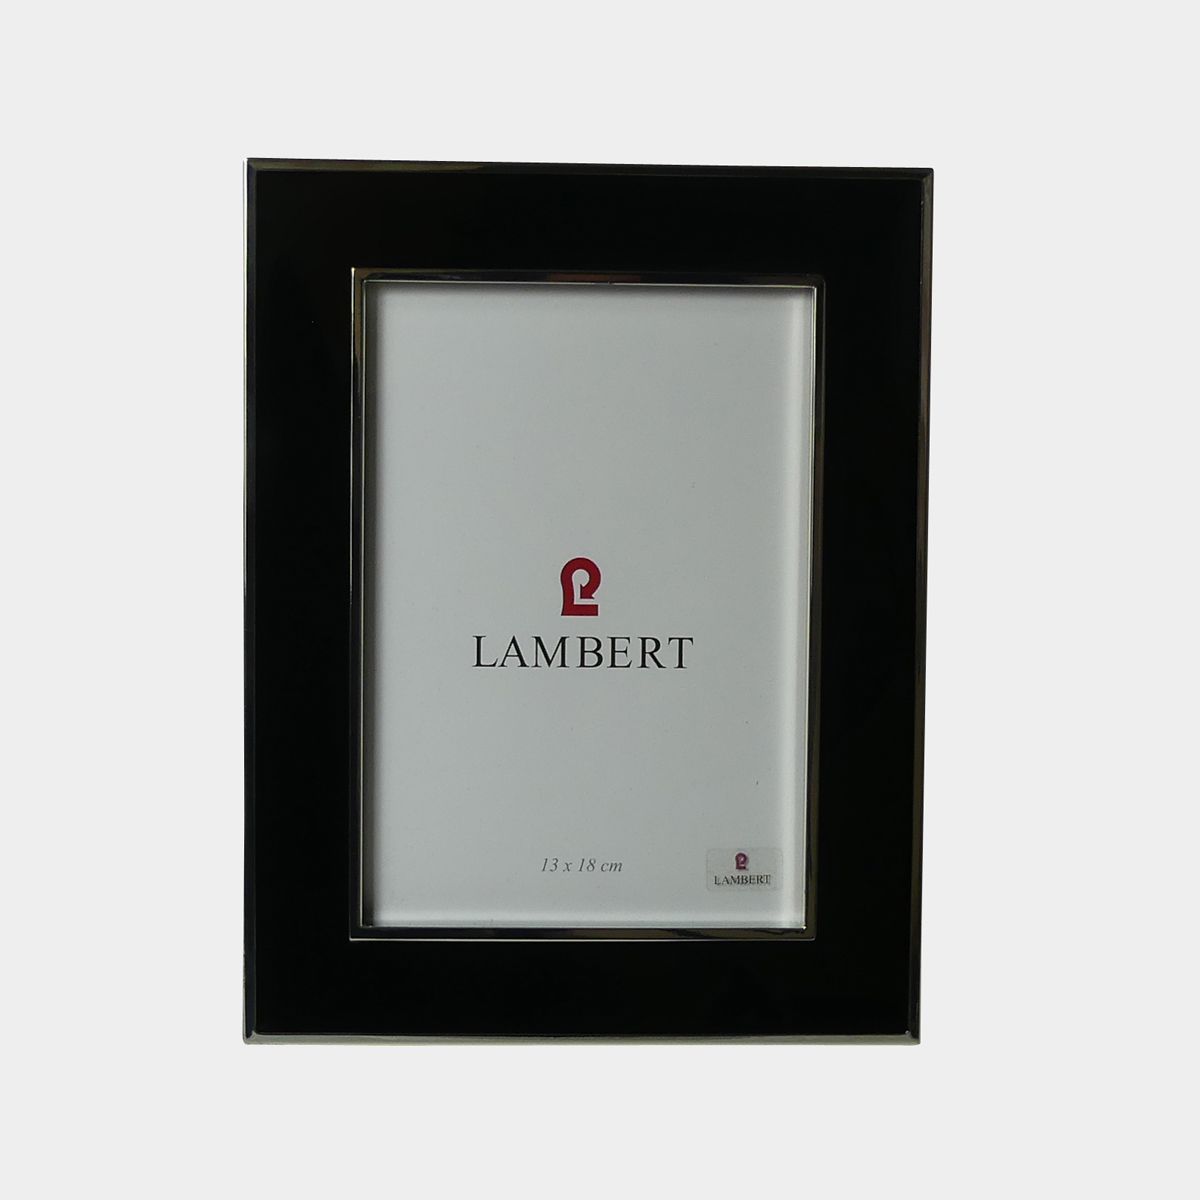 Lambert Portland Bilderrahmen schwarz 13 x 18 cm online kaufen | Zawoh